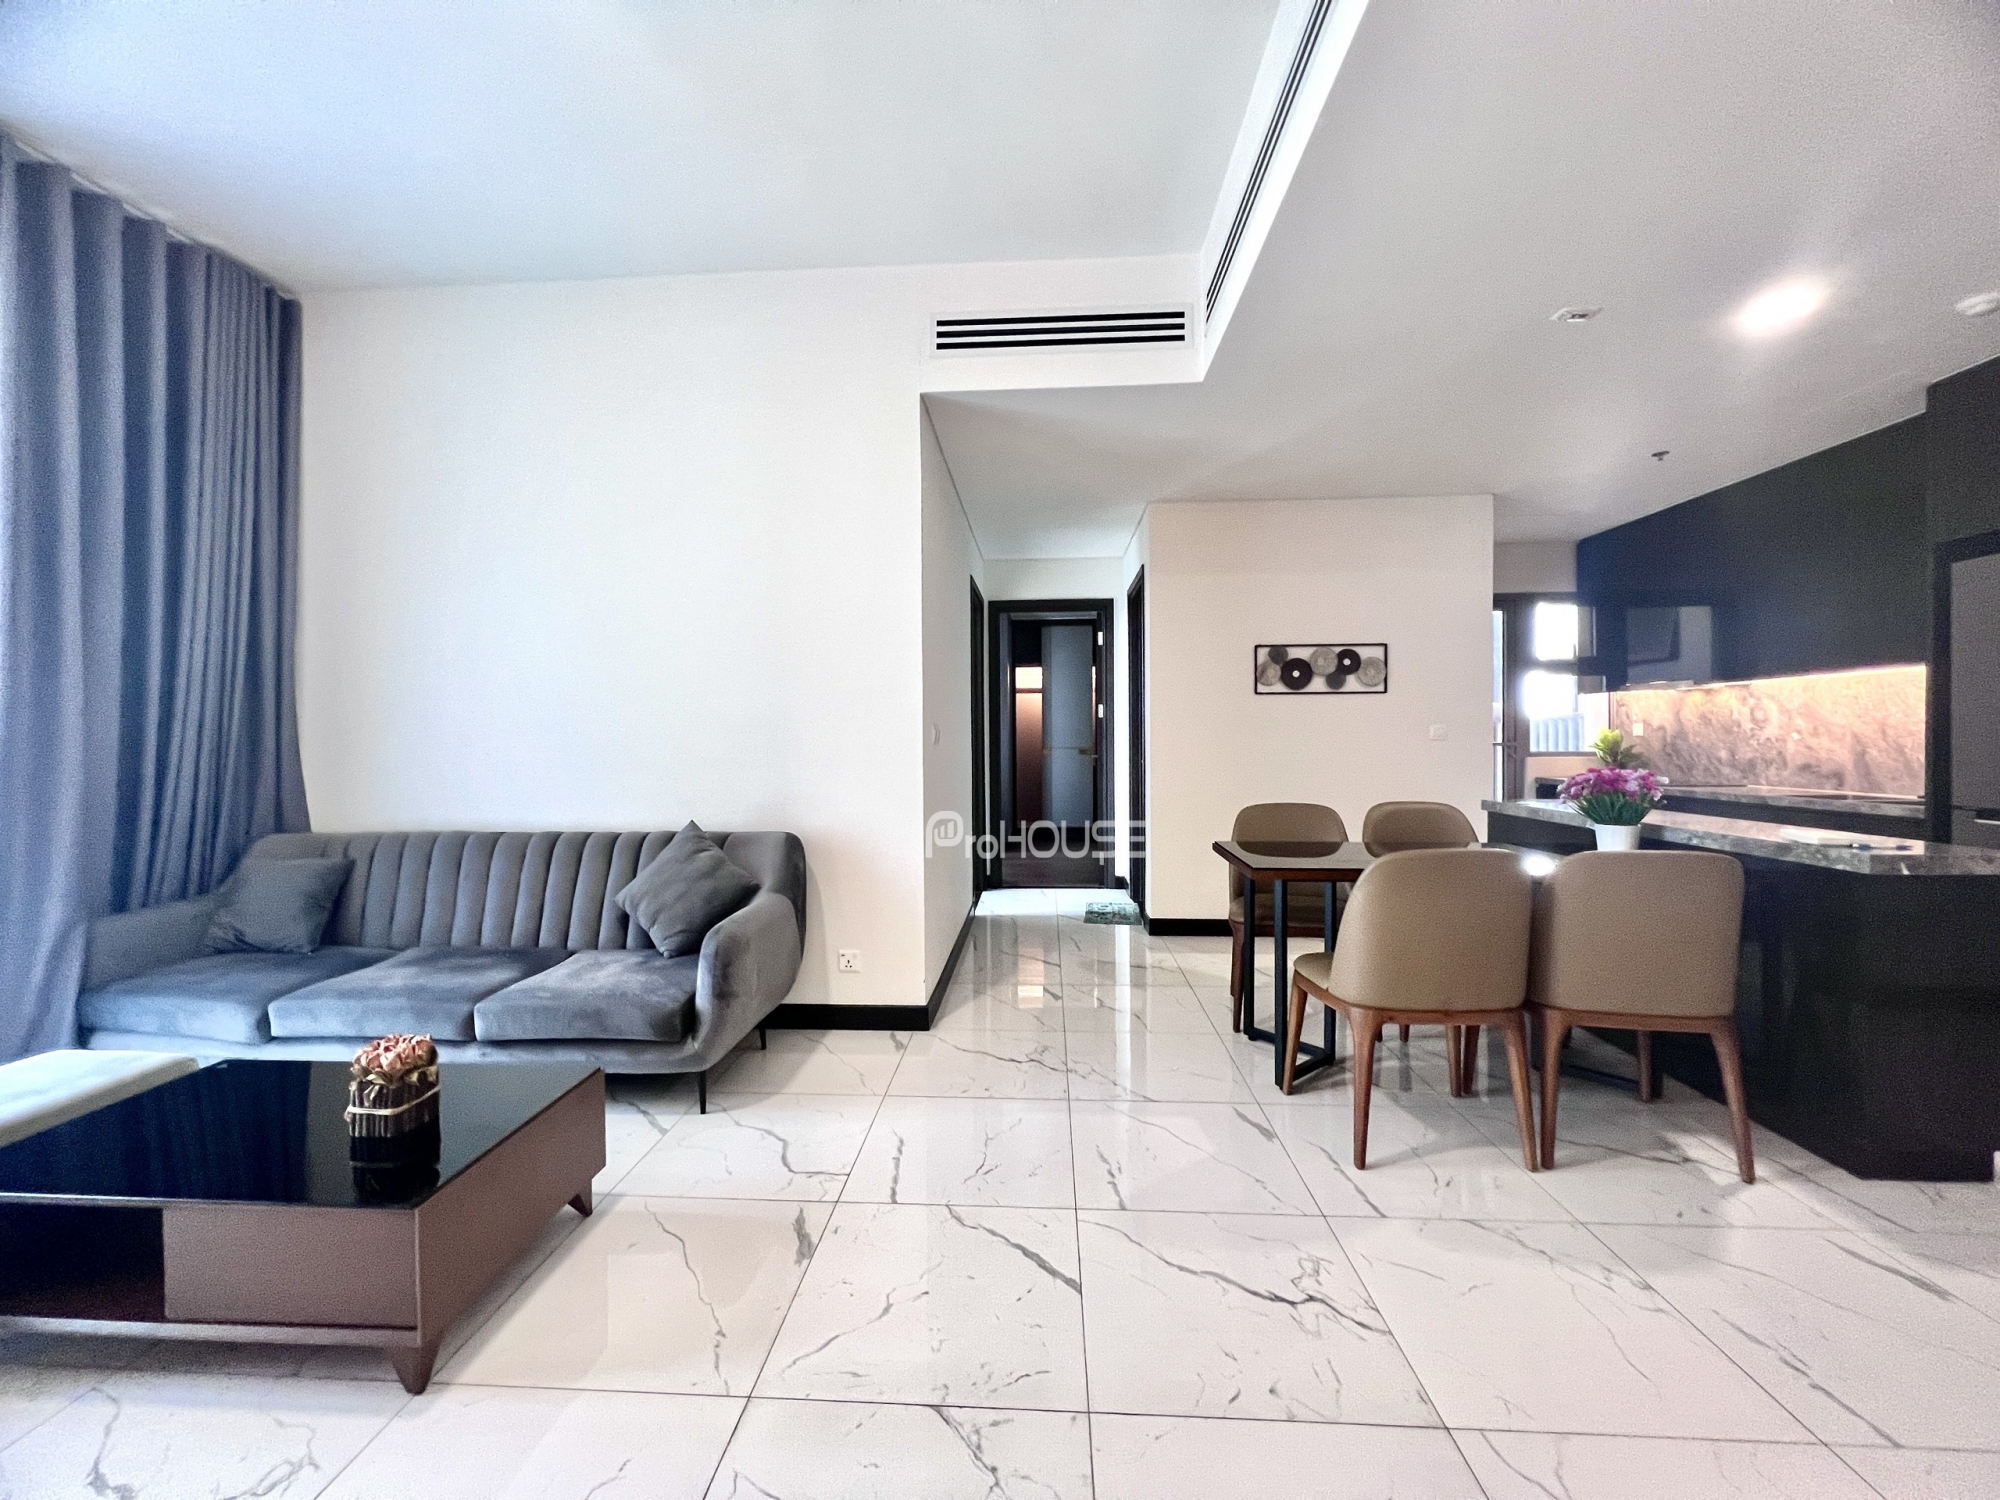 Cho thuê căn hộ 2 phòng ngủ rộng rãi và đầy đủ tiện nghi tại Empire City với thiết kế hiện đại